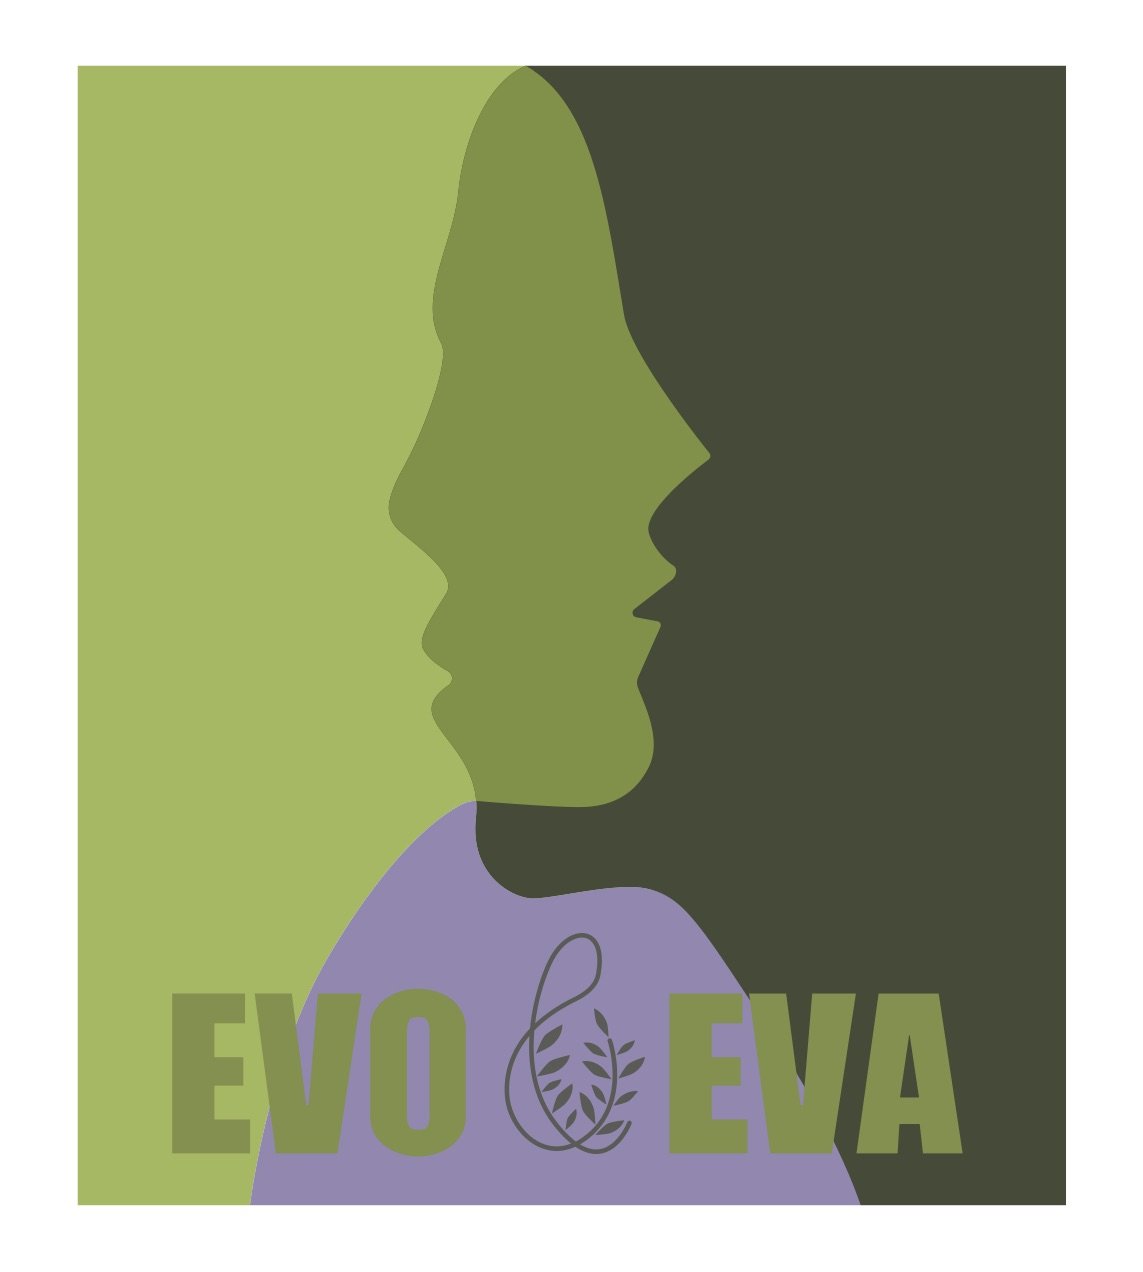 Tutto pronto per il Premio internazionale Evo&Eva – L’olivo nella cosmesi naturale